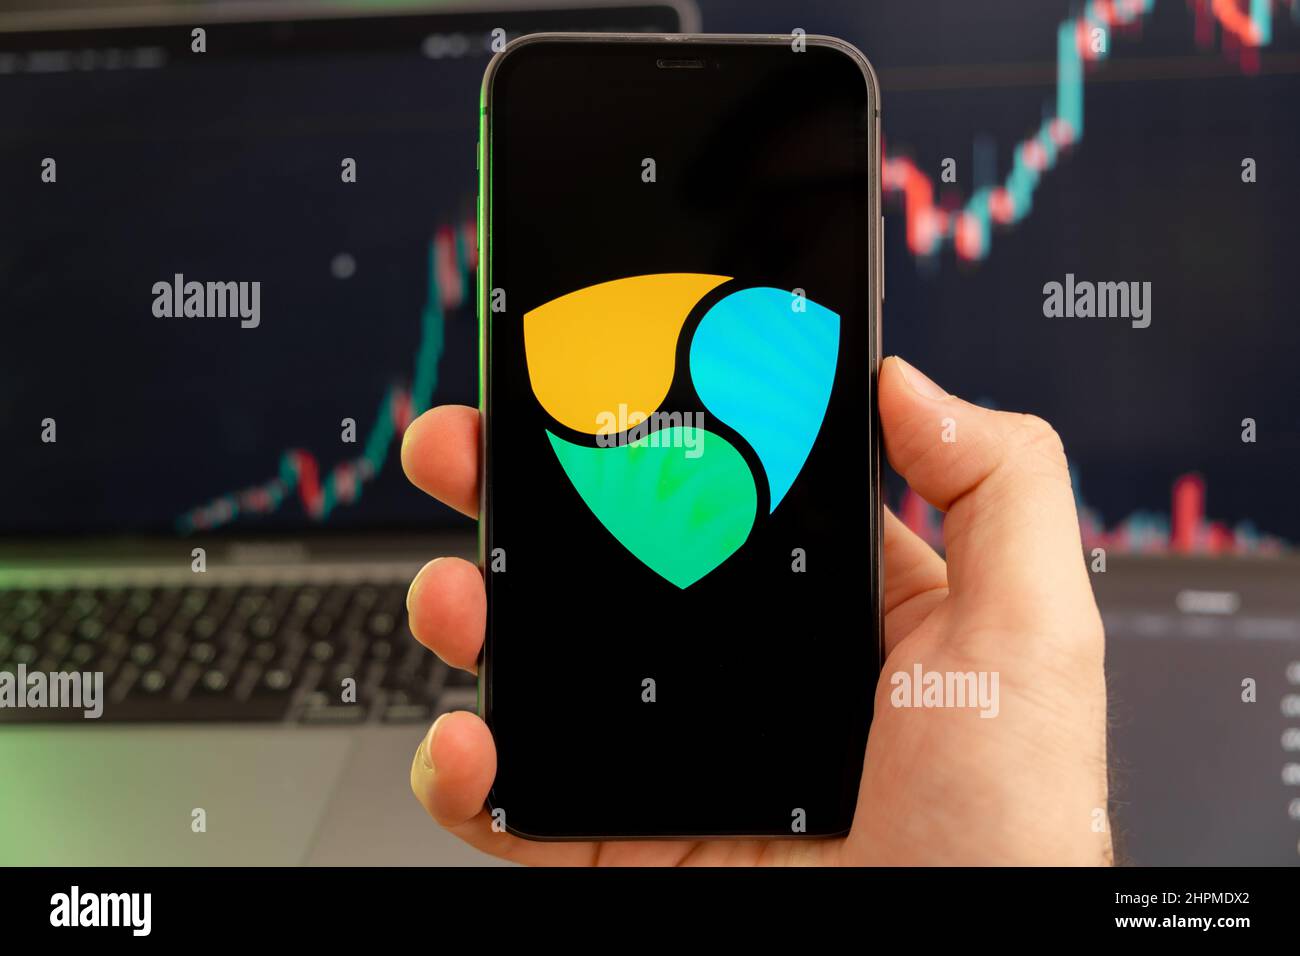 NEM XEM Kryptowährung Logo auf dem Bildschirm eines Smartphones in Mans Hand mit einem wachsenden Trend auf dem Chart auf grünem Hintergrund. Stockfoto